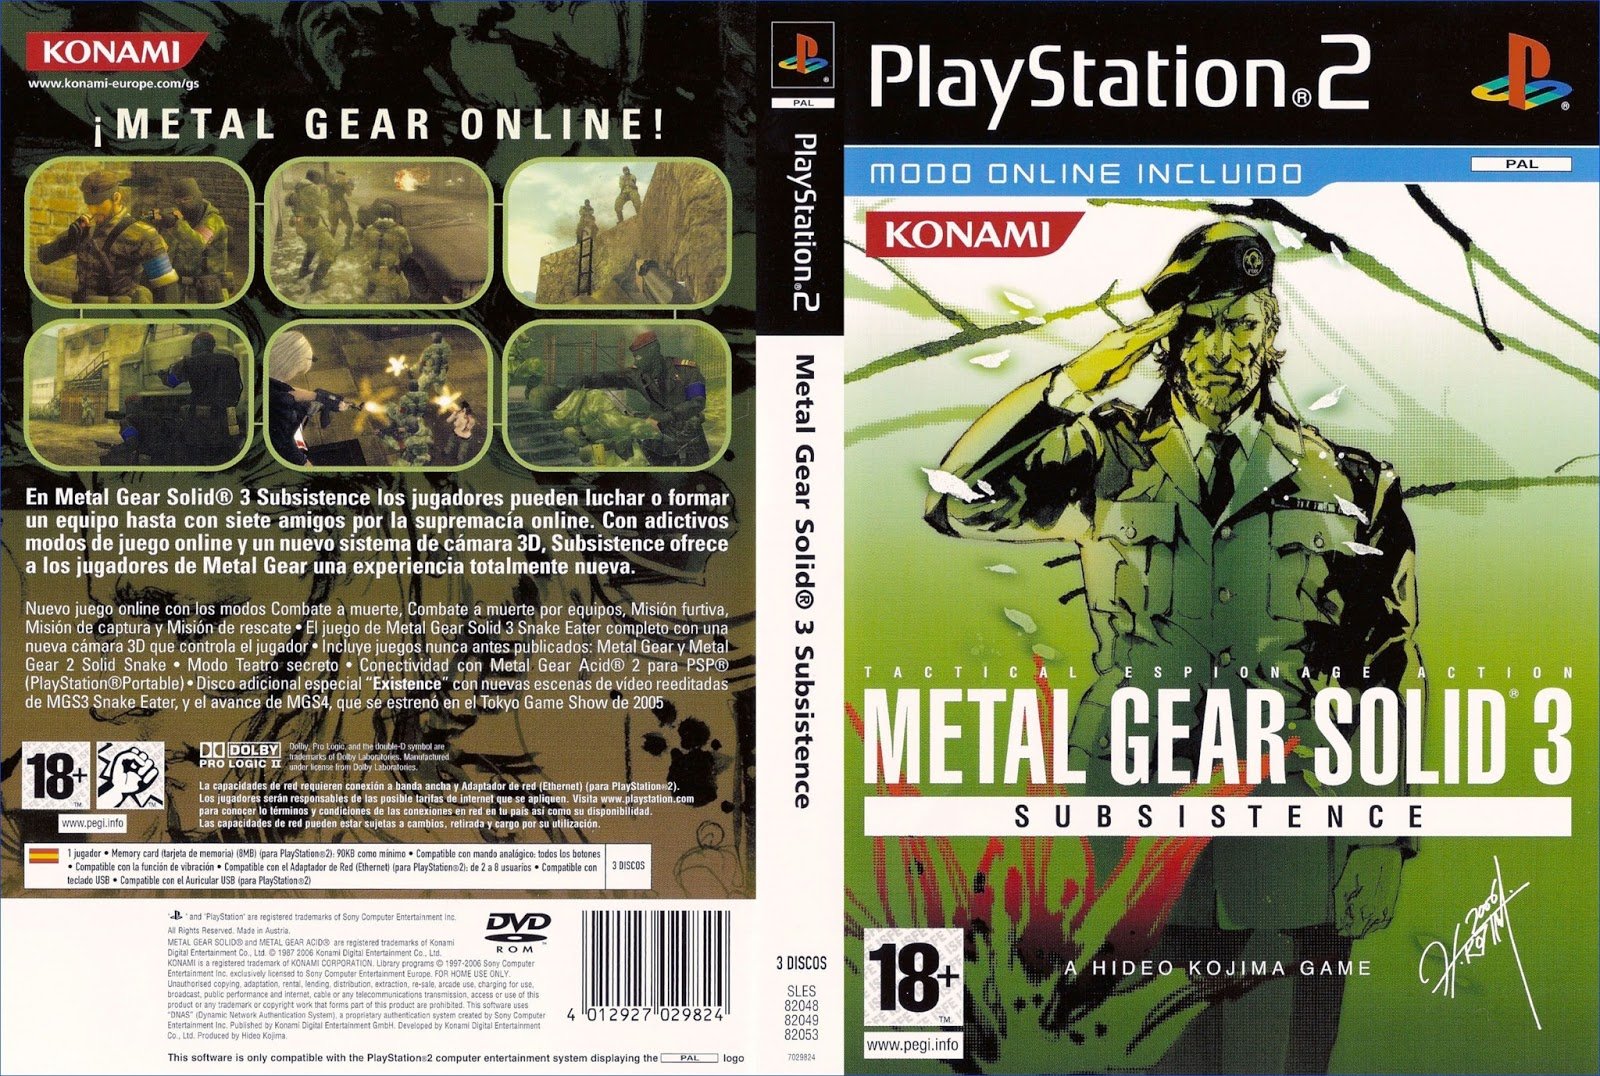 Metal_Gear_Solid_3_-_Subsistence-DVD-PS2.jpg.f0d1af2f4ba6ecaf3cc00fa2dc70d0c1.jpg